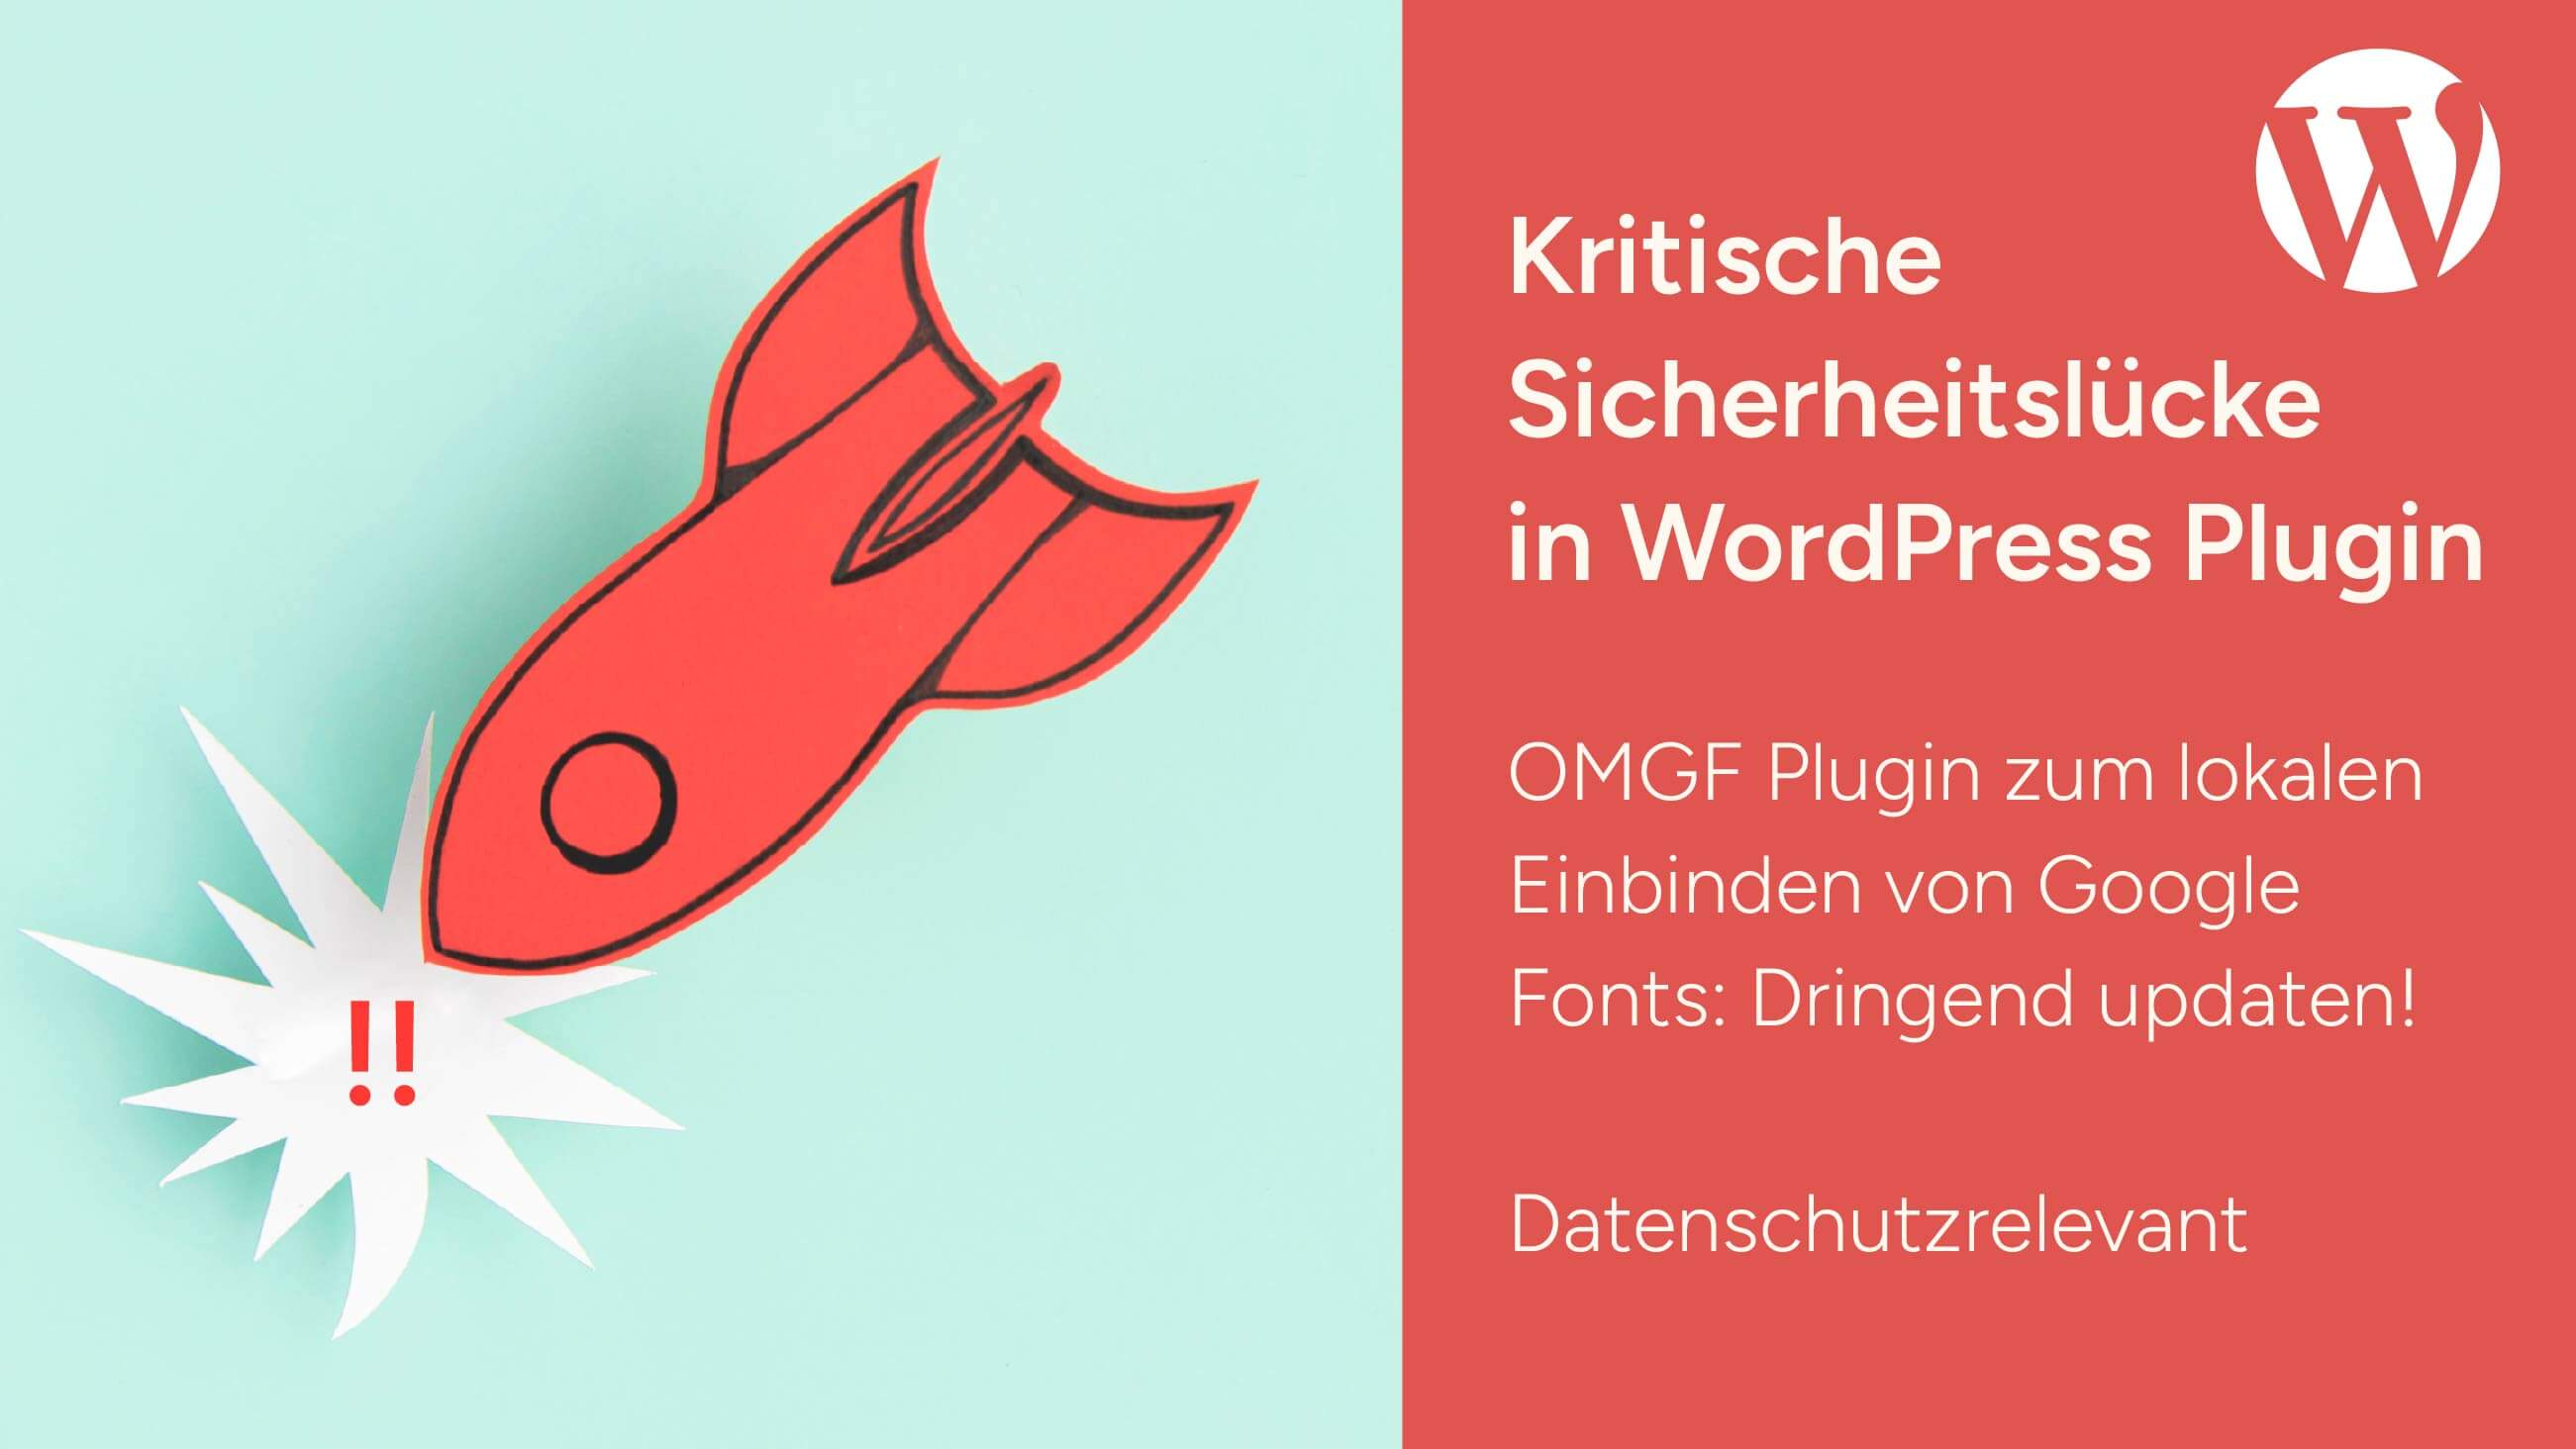 Dringend updaten! WordPress Plugin - OMGF weist kritische Sicherheitslücke auf